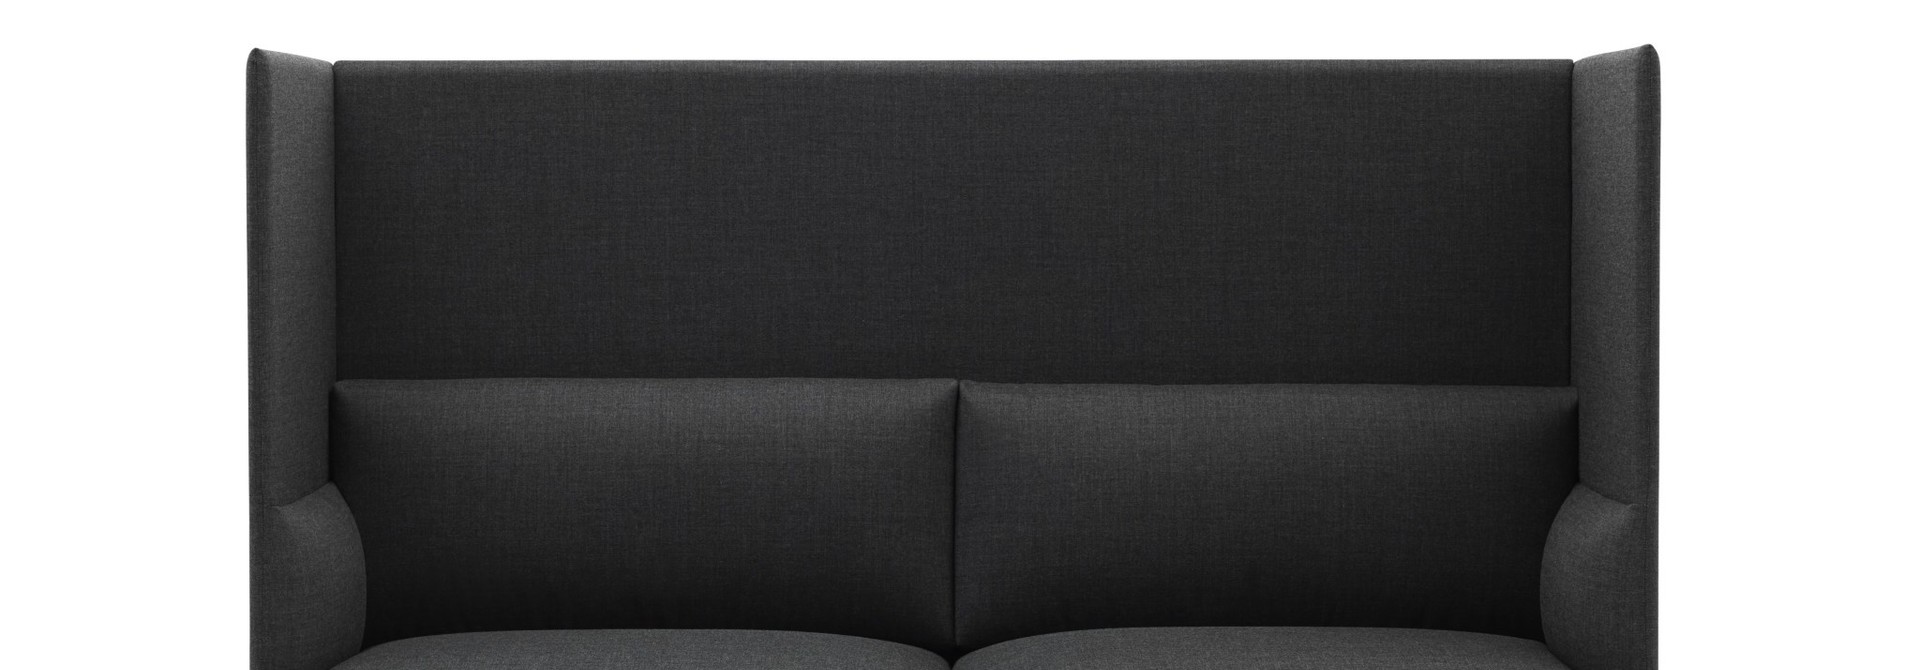 Outline Highback Sofa 2-seater black base